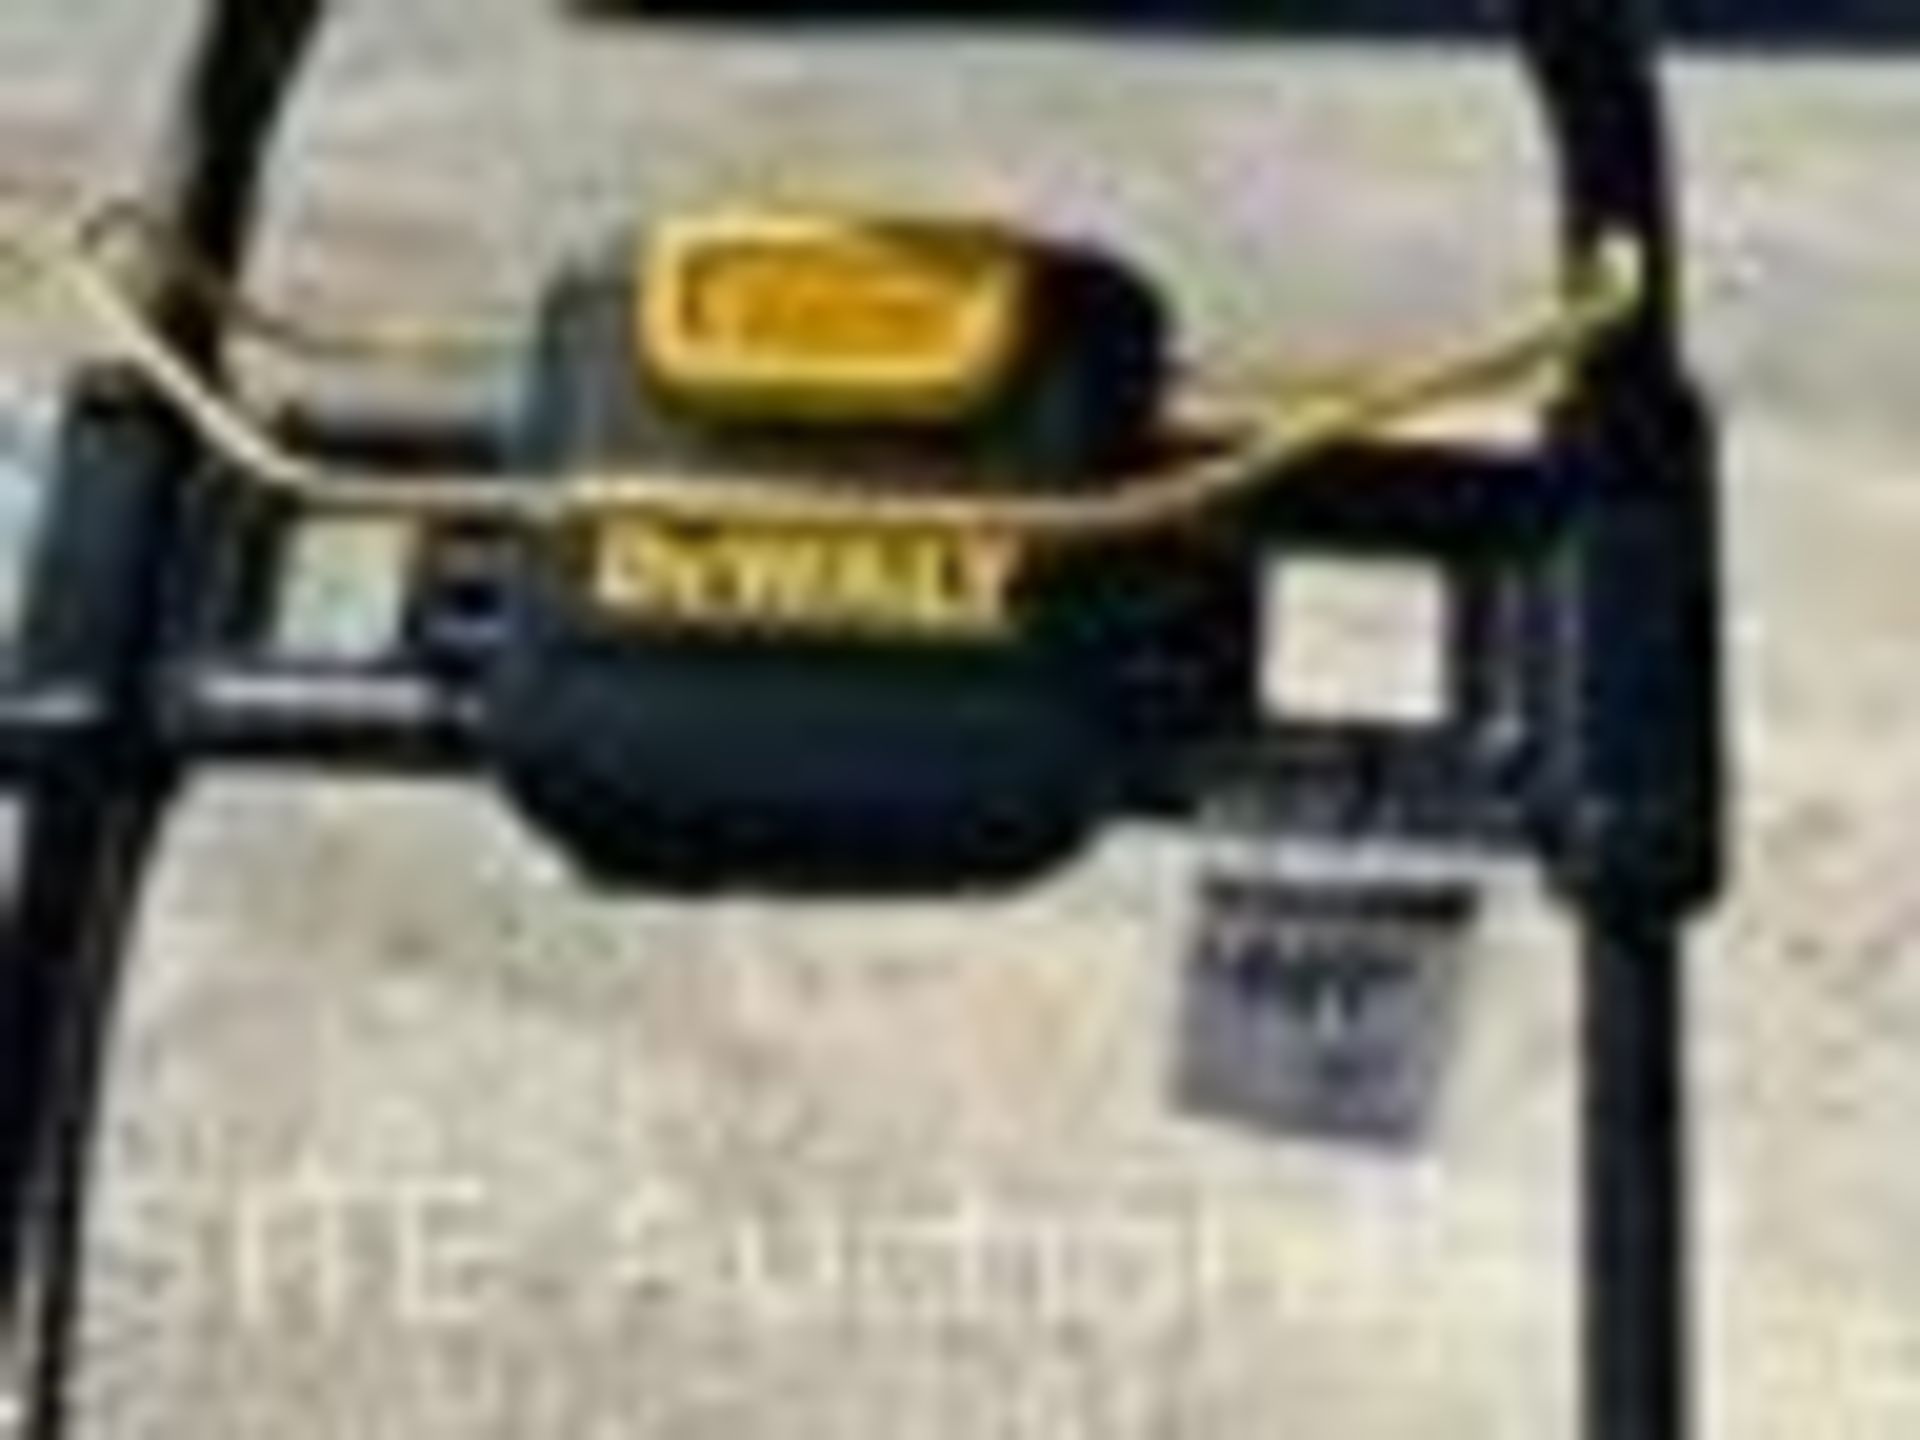 Dewalt Electric Mower - Image 4 of 4